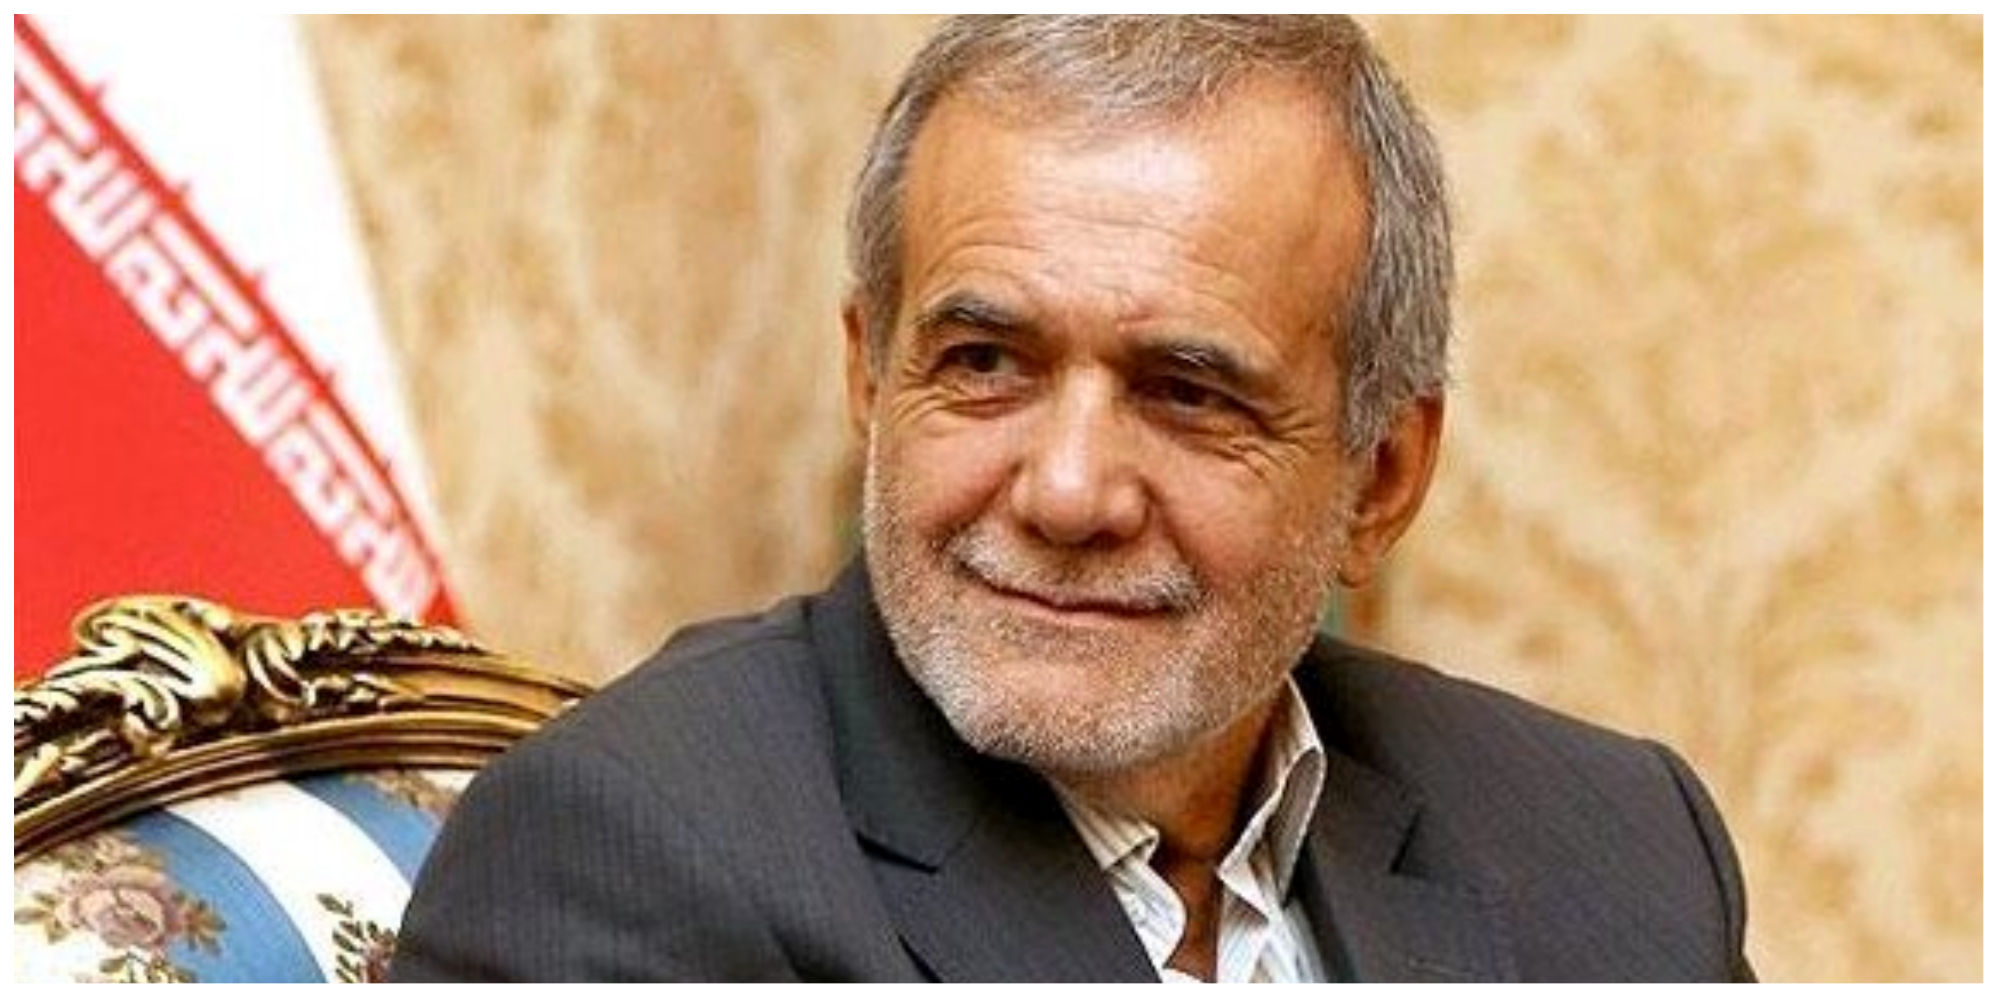 بهزاد نبوی: پیروزی مسعود پزشکیان در مرحله اول برایمان افتخار بود